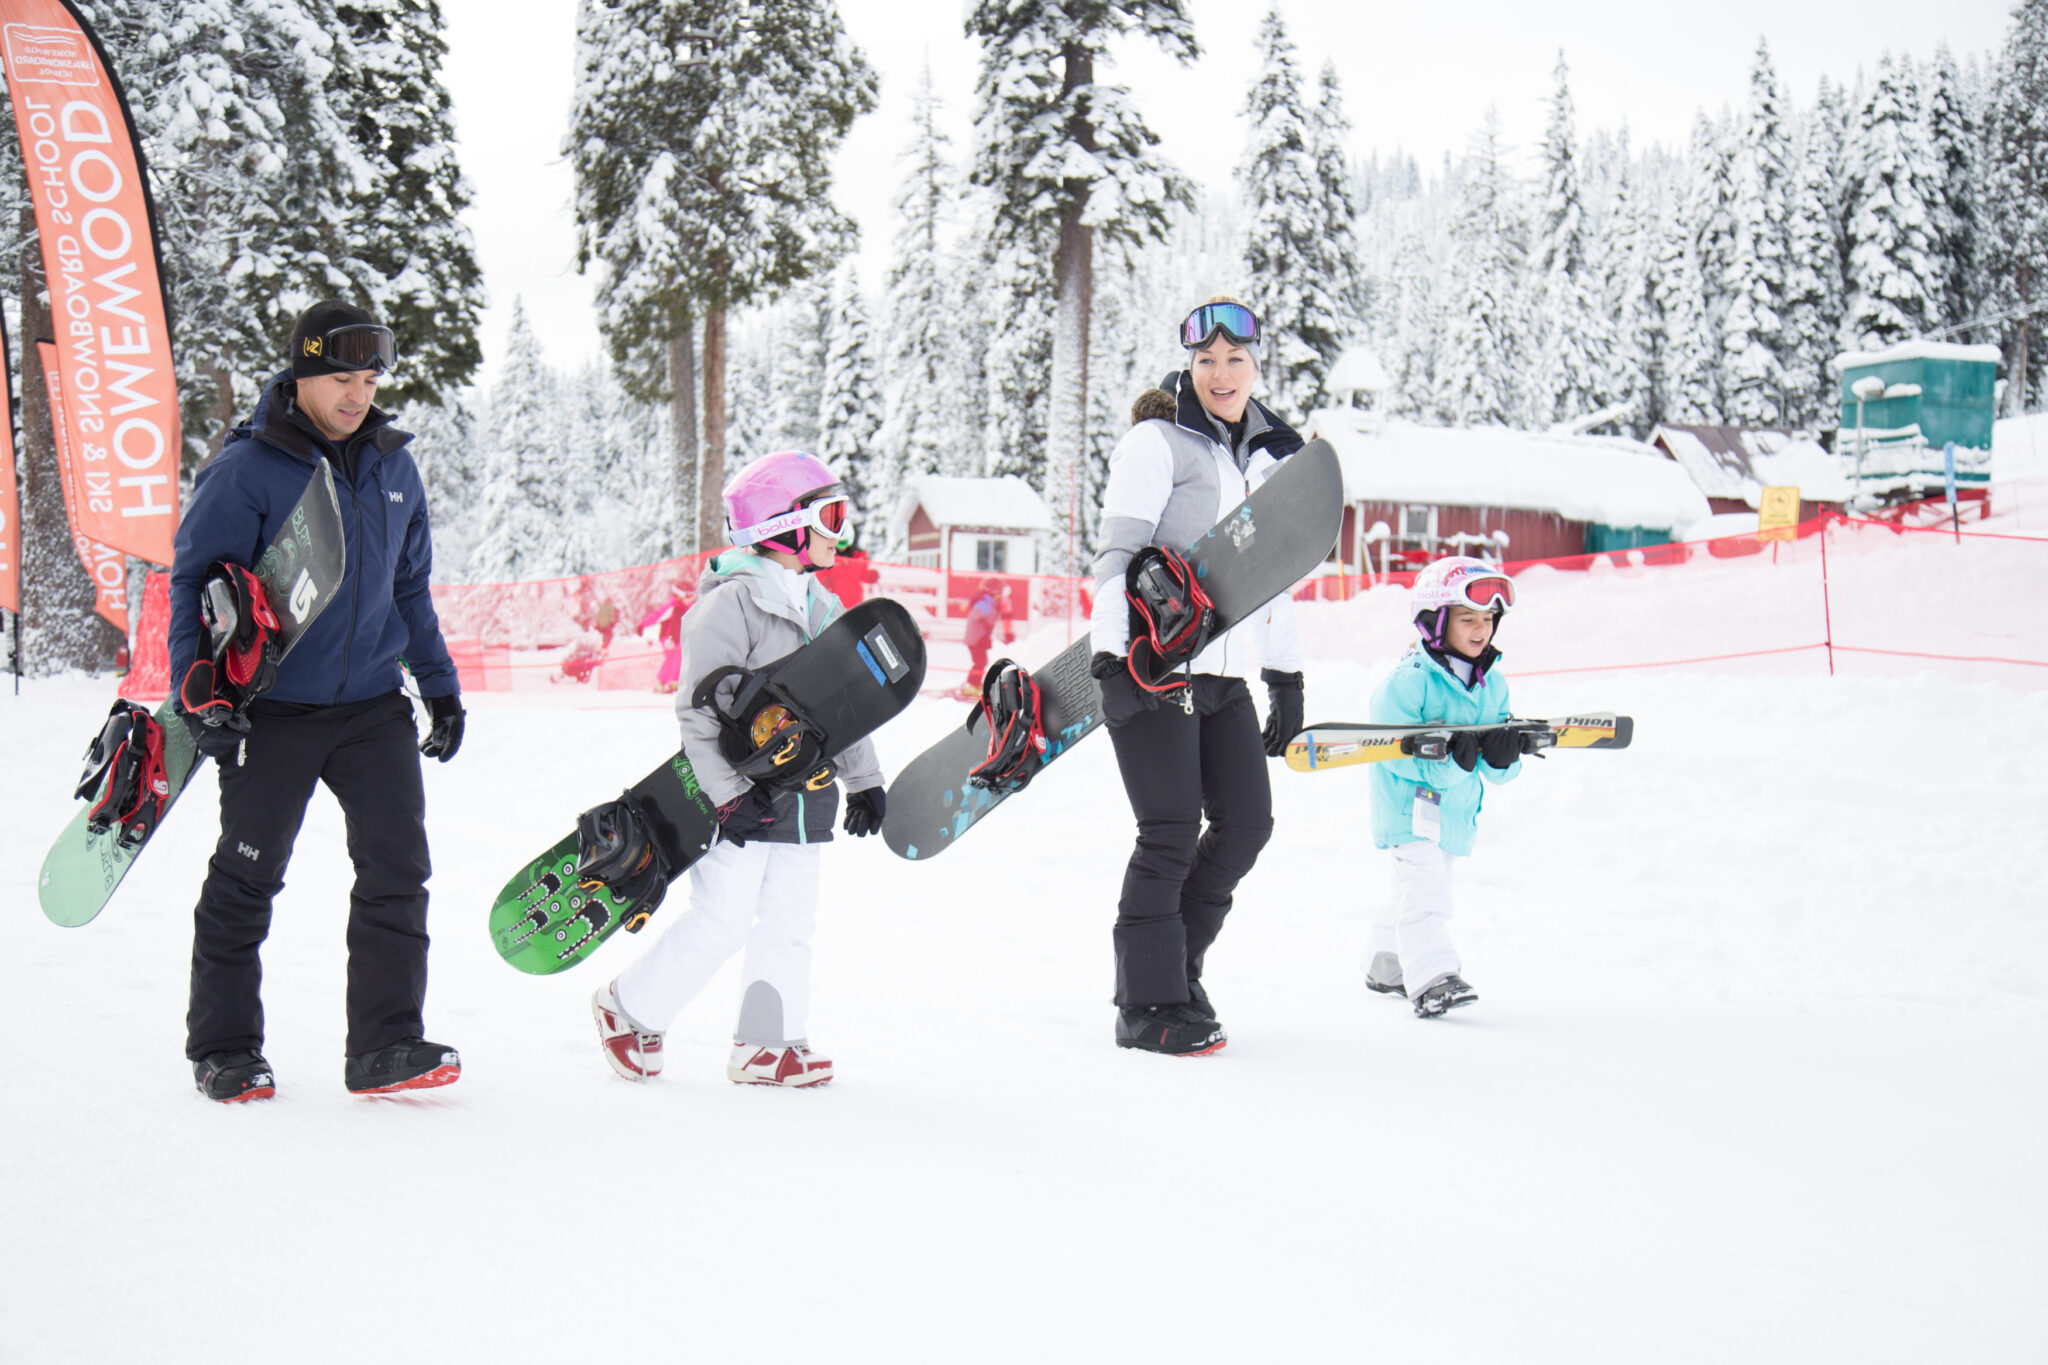 family arriving at ski resort